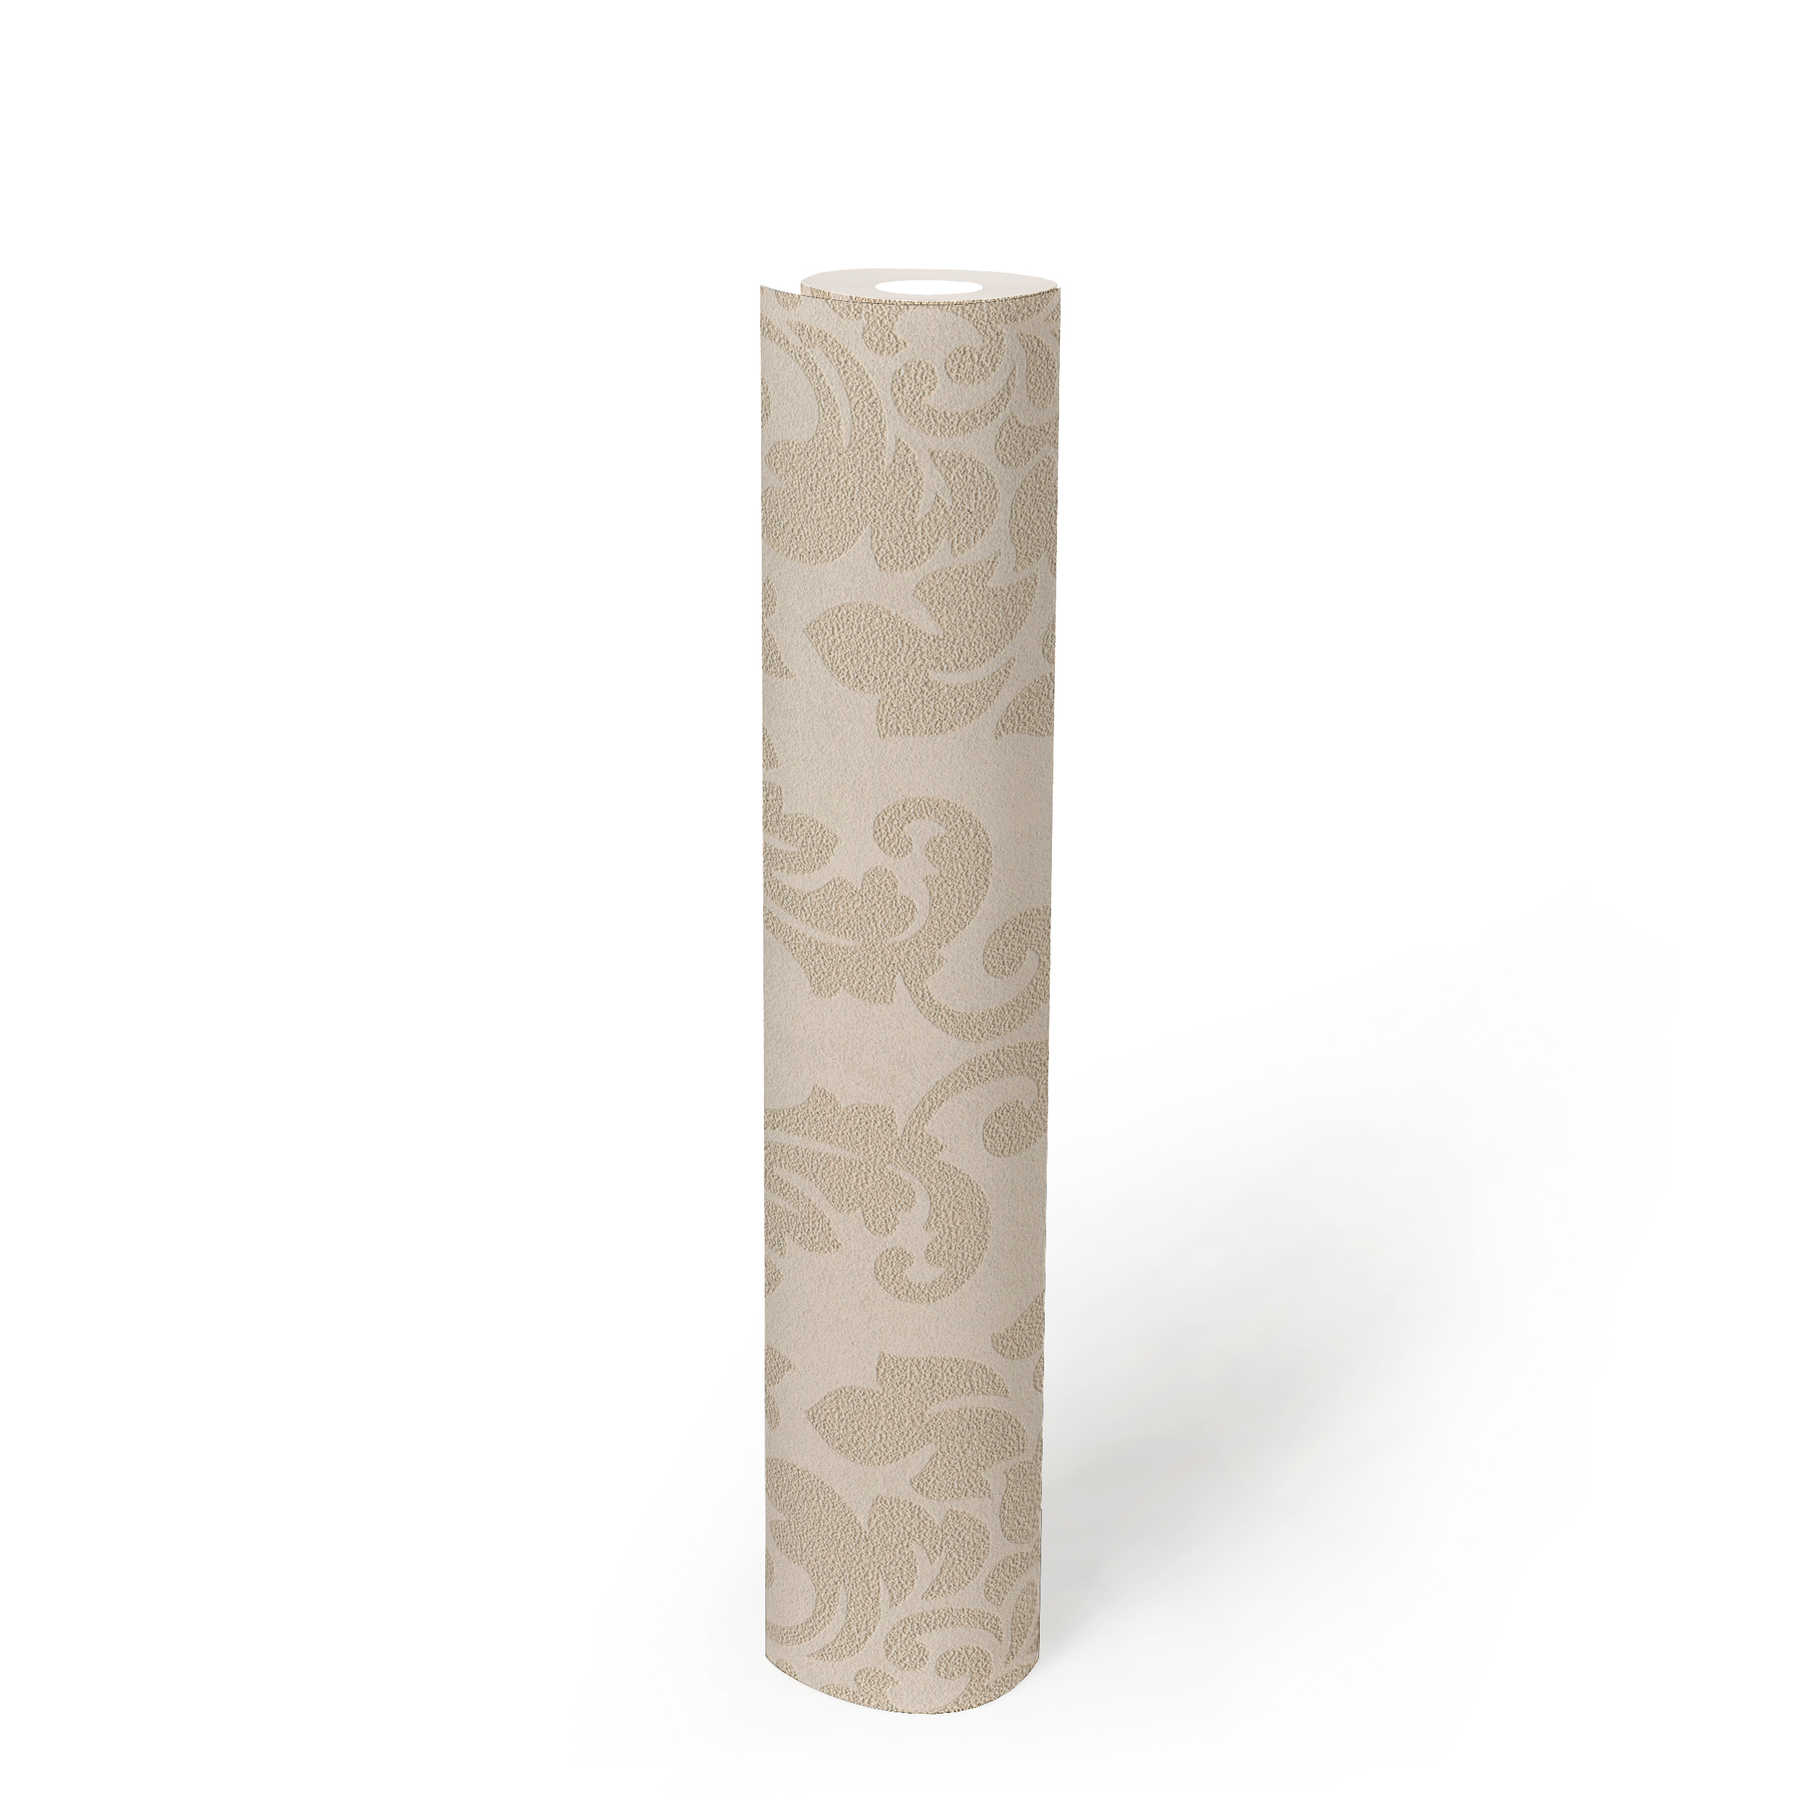             Florale Ornamenttapete mit Metallic-Effekt – Beige, Creme, Gold
        